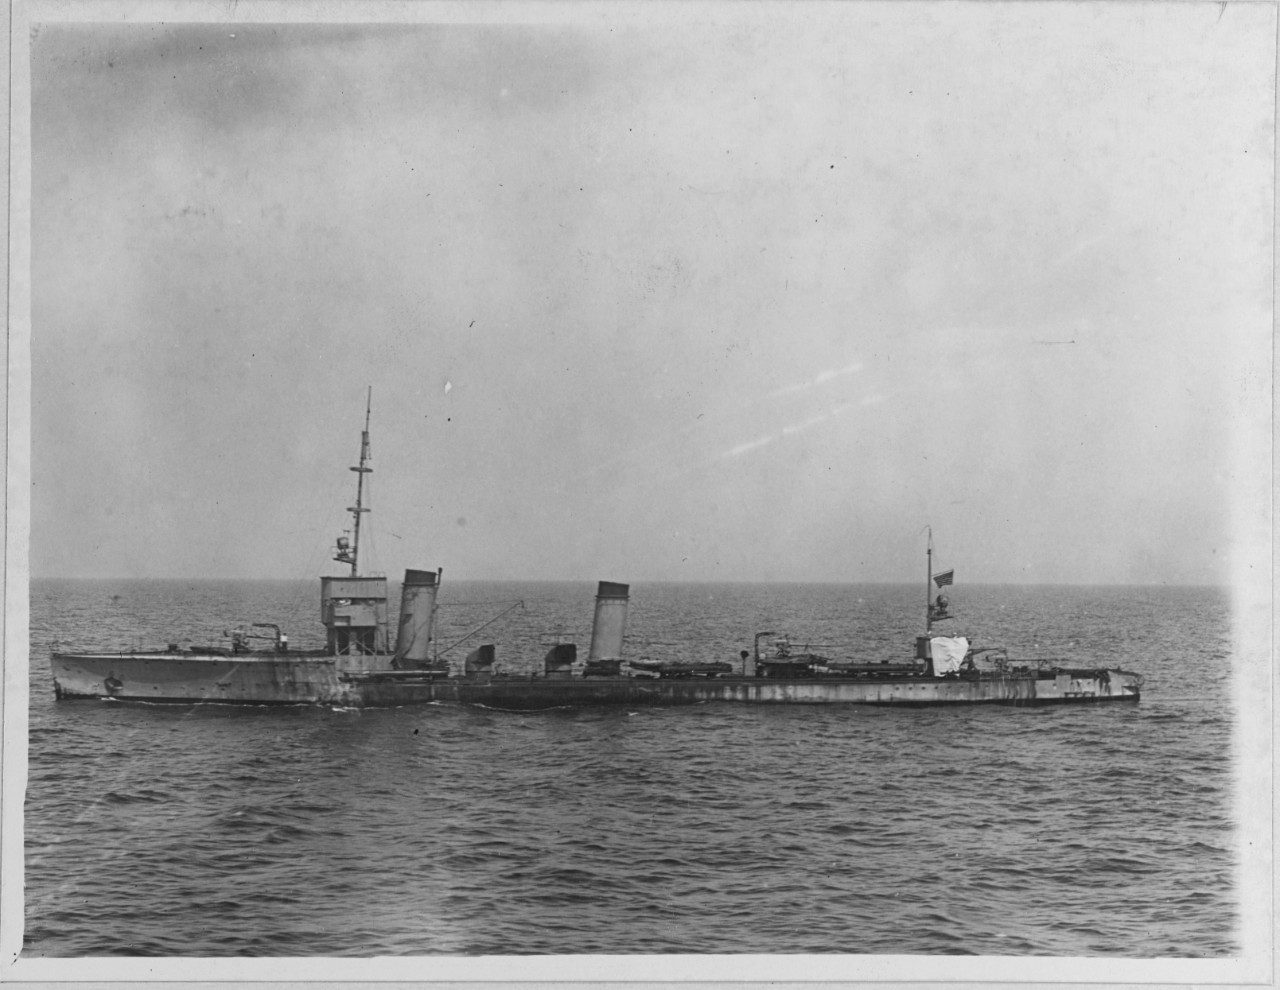 S-132 (German destroyer, 1917)